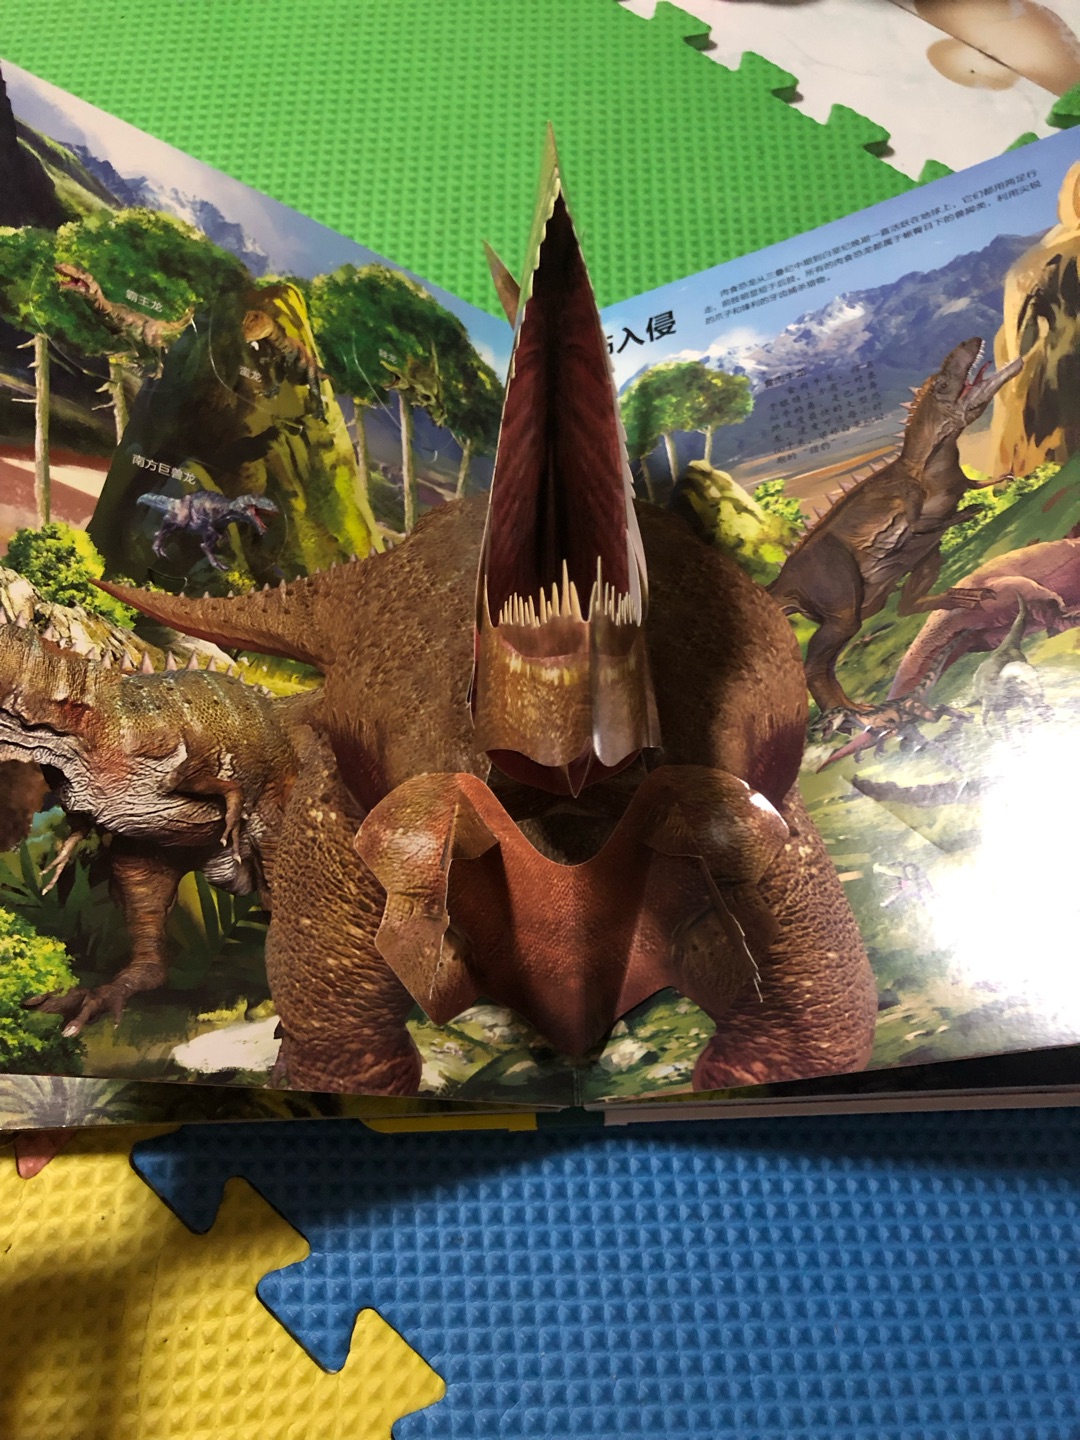 小朋友似乎还不太喜欢恐龙，妈妈倒是很喜欢。我先学习一下。